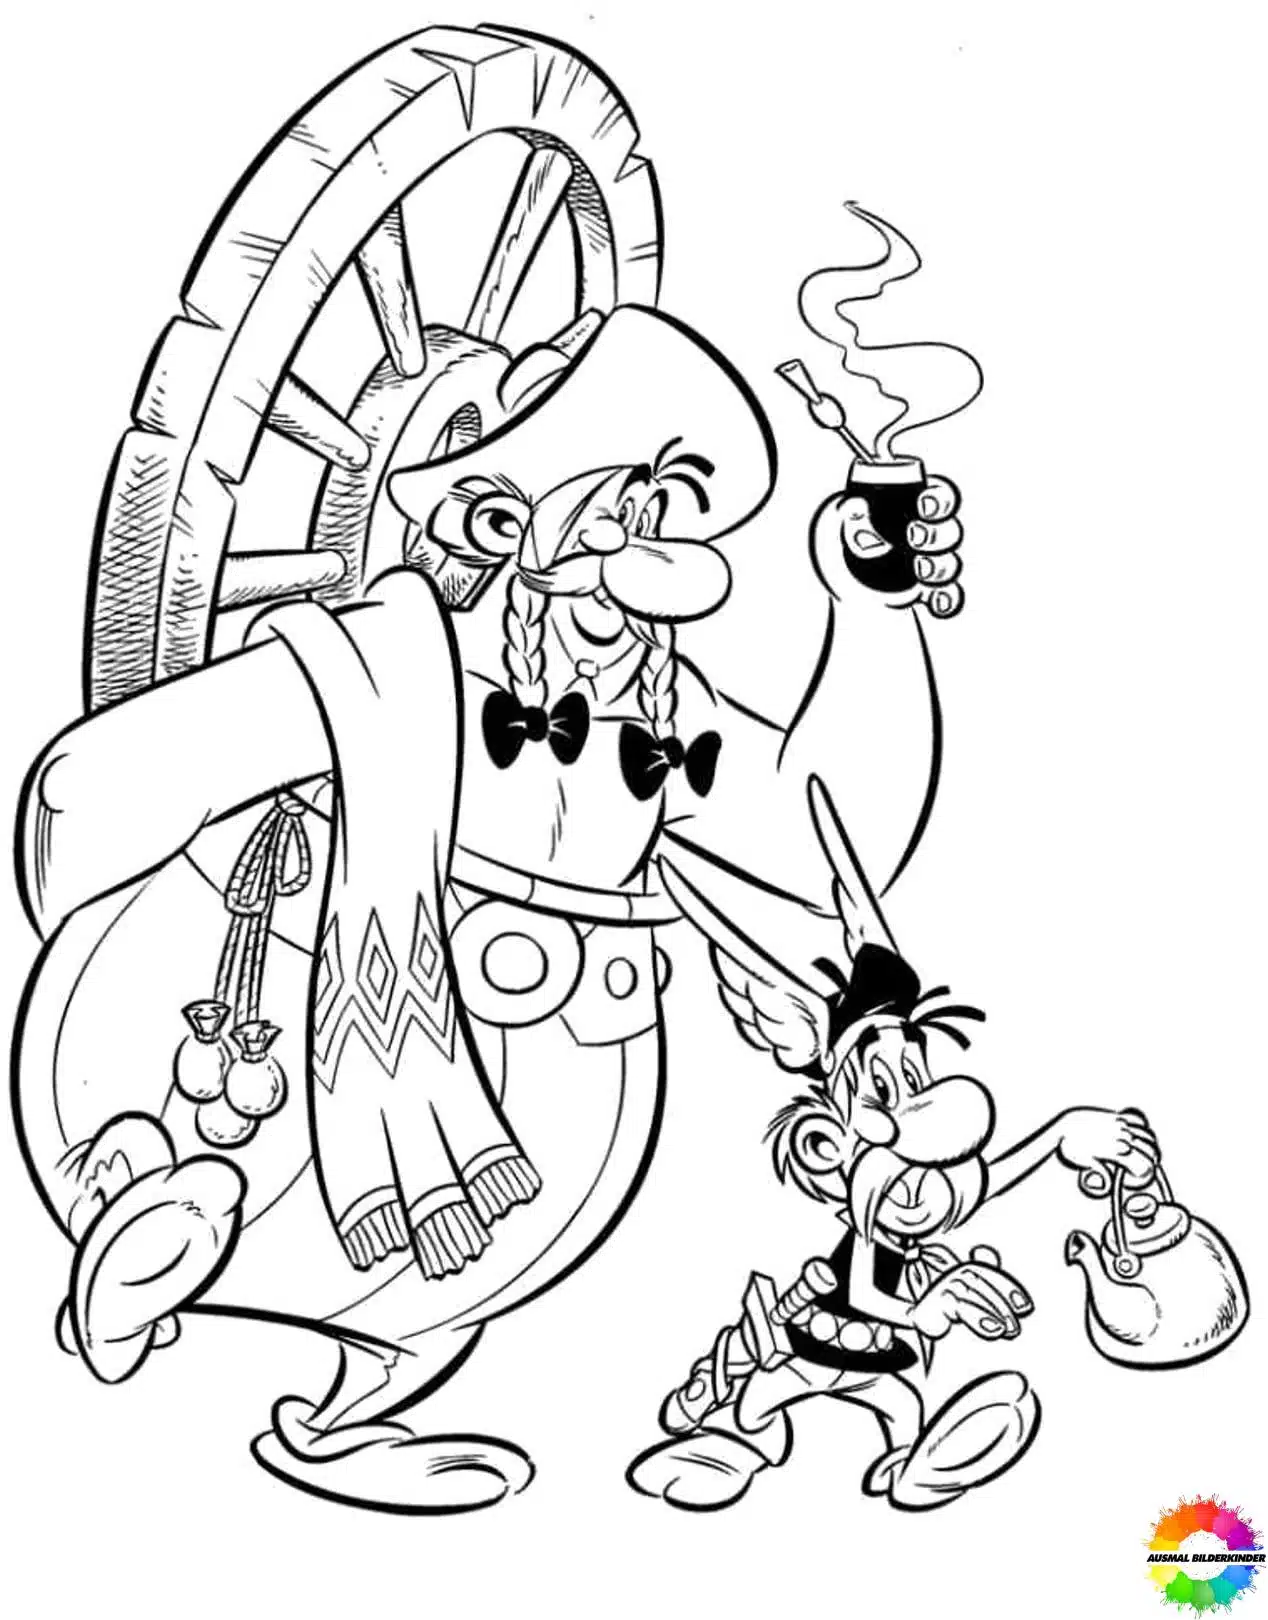 Asterix and Obelix 14